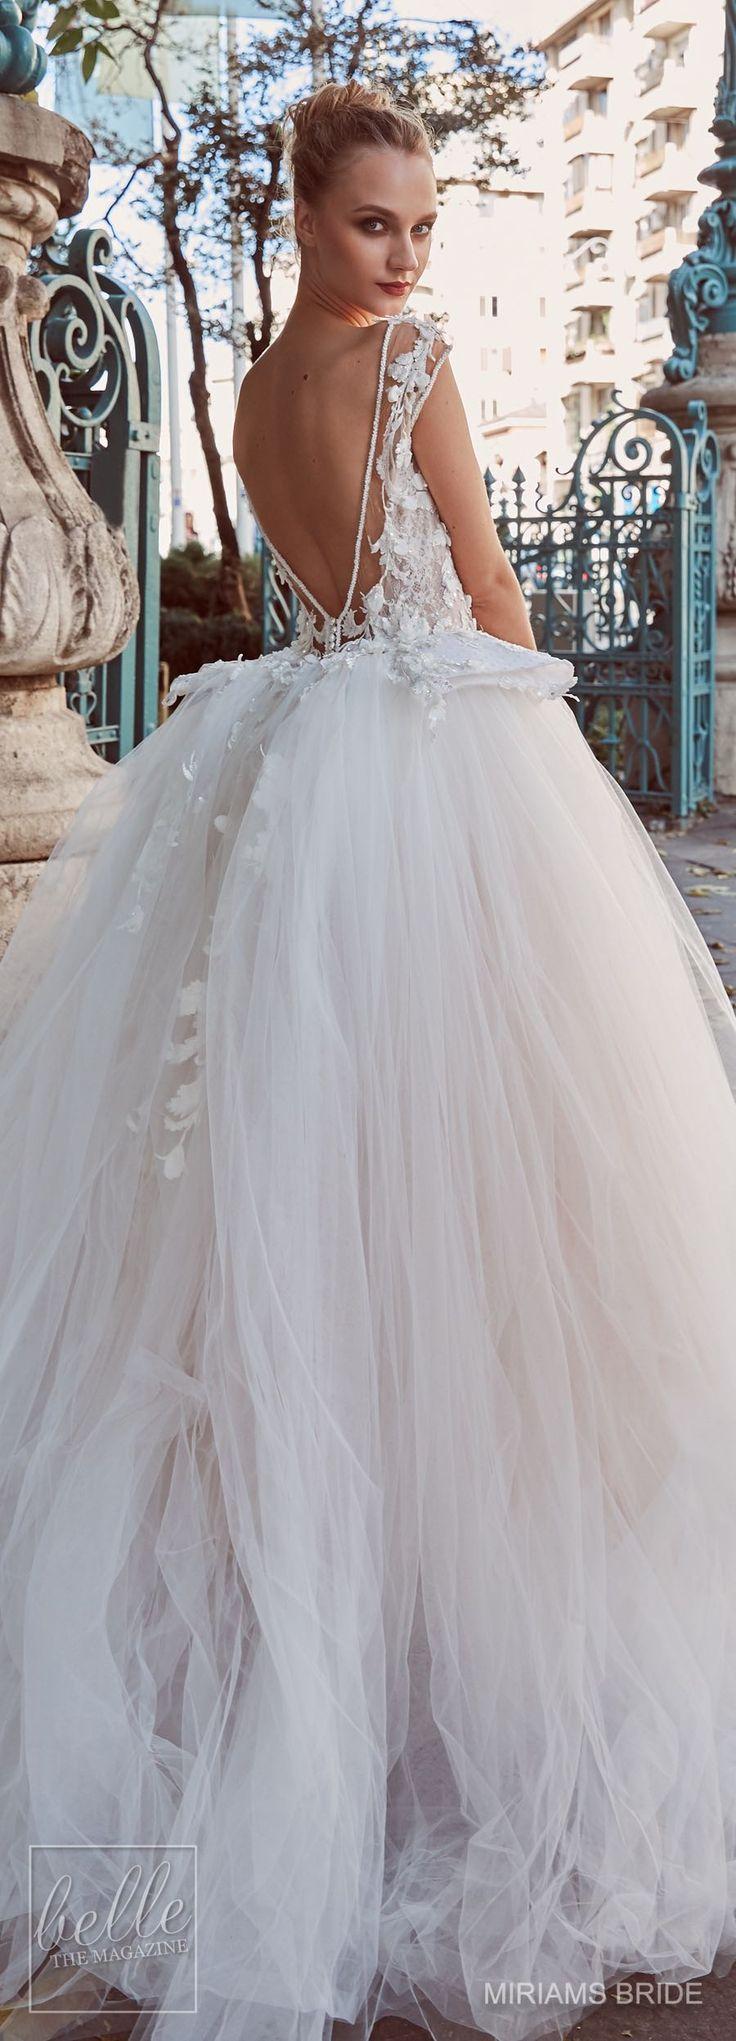 Hochzeit - Wedding Dresses By Miriams Bride 2018 Collection